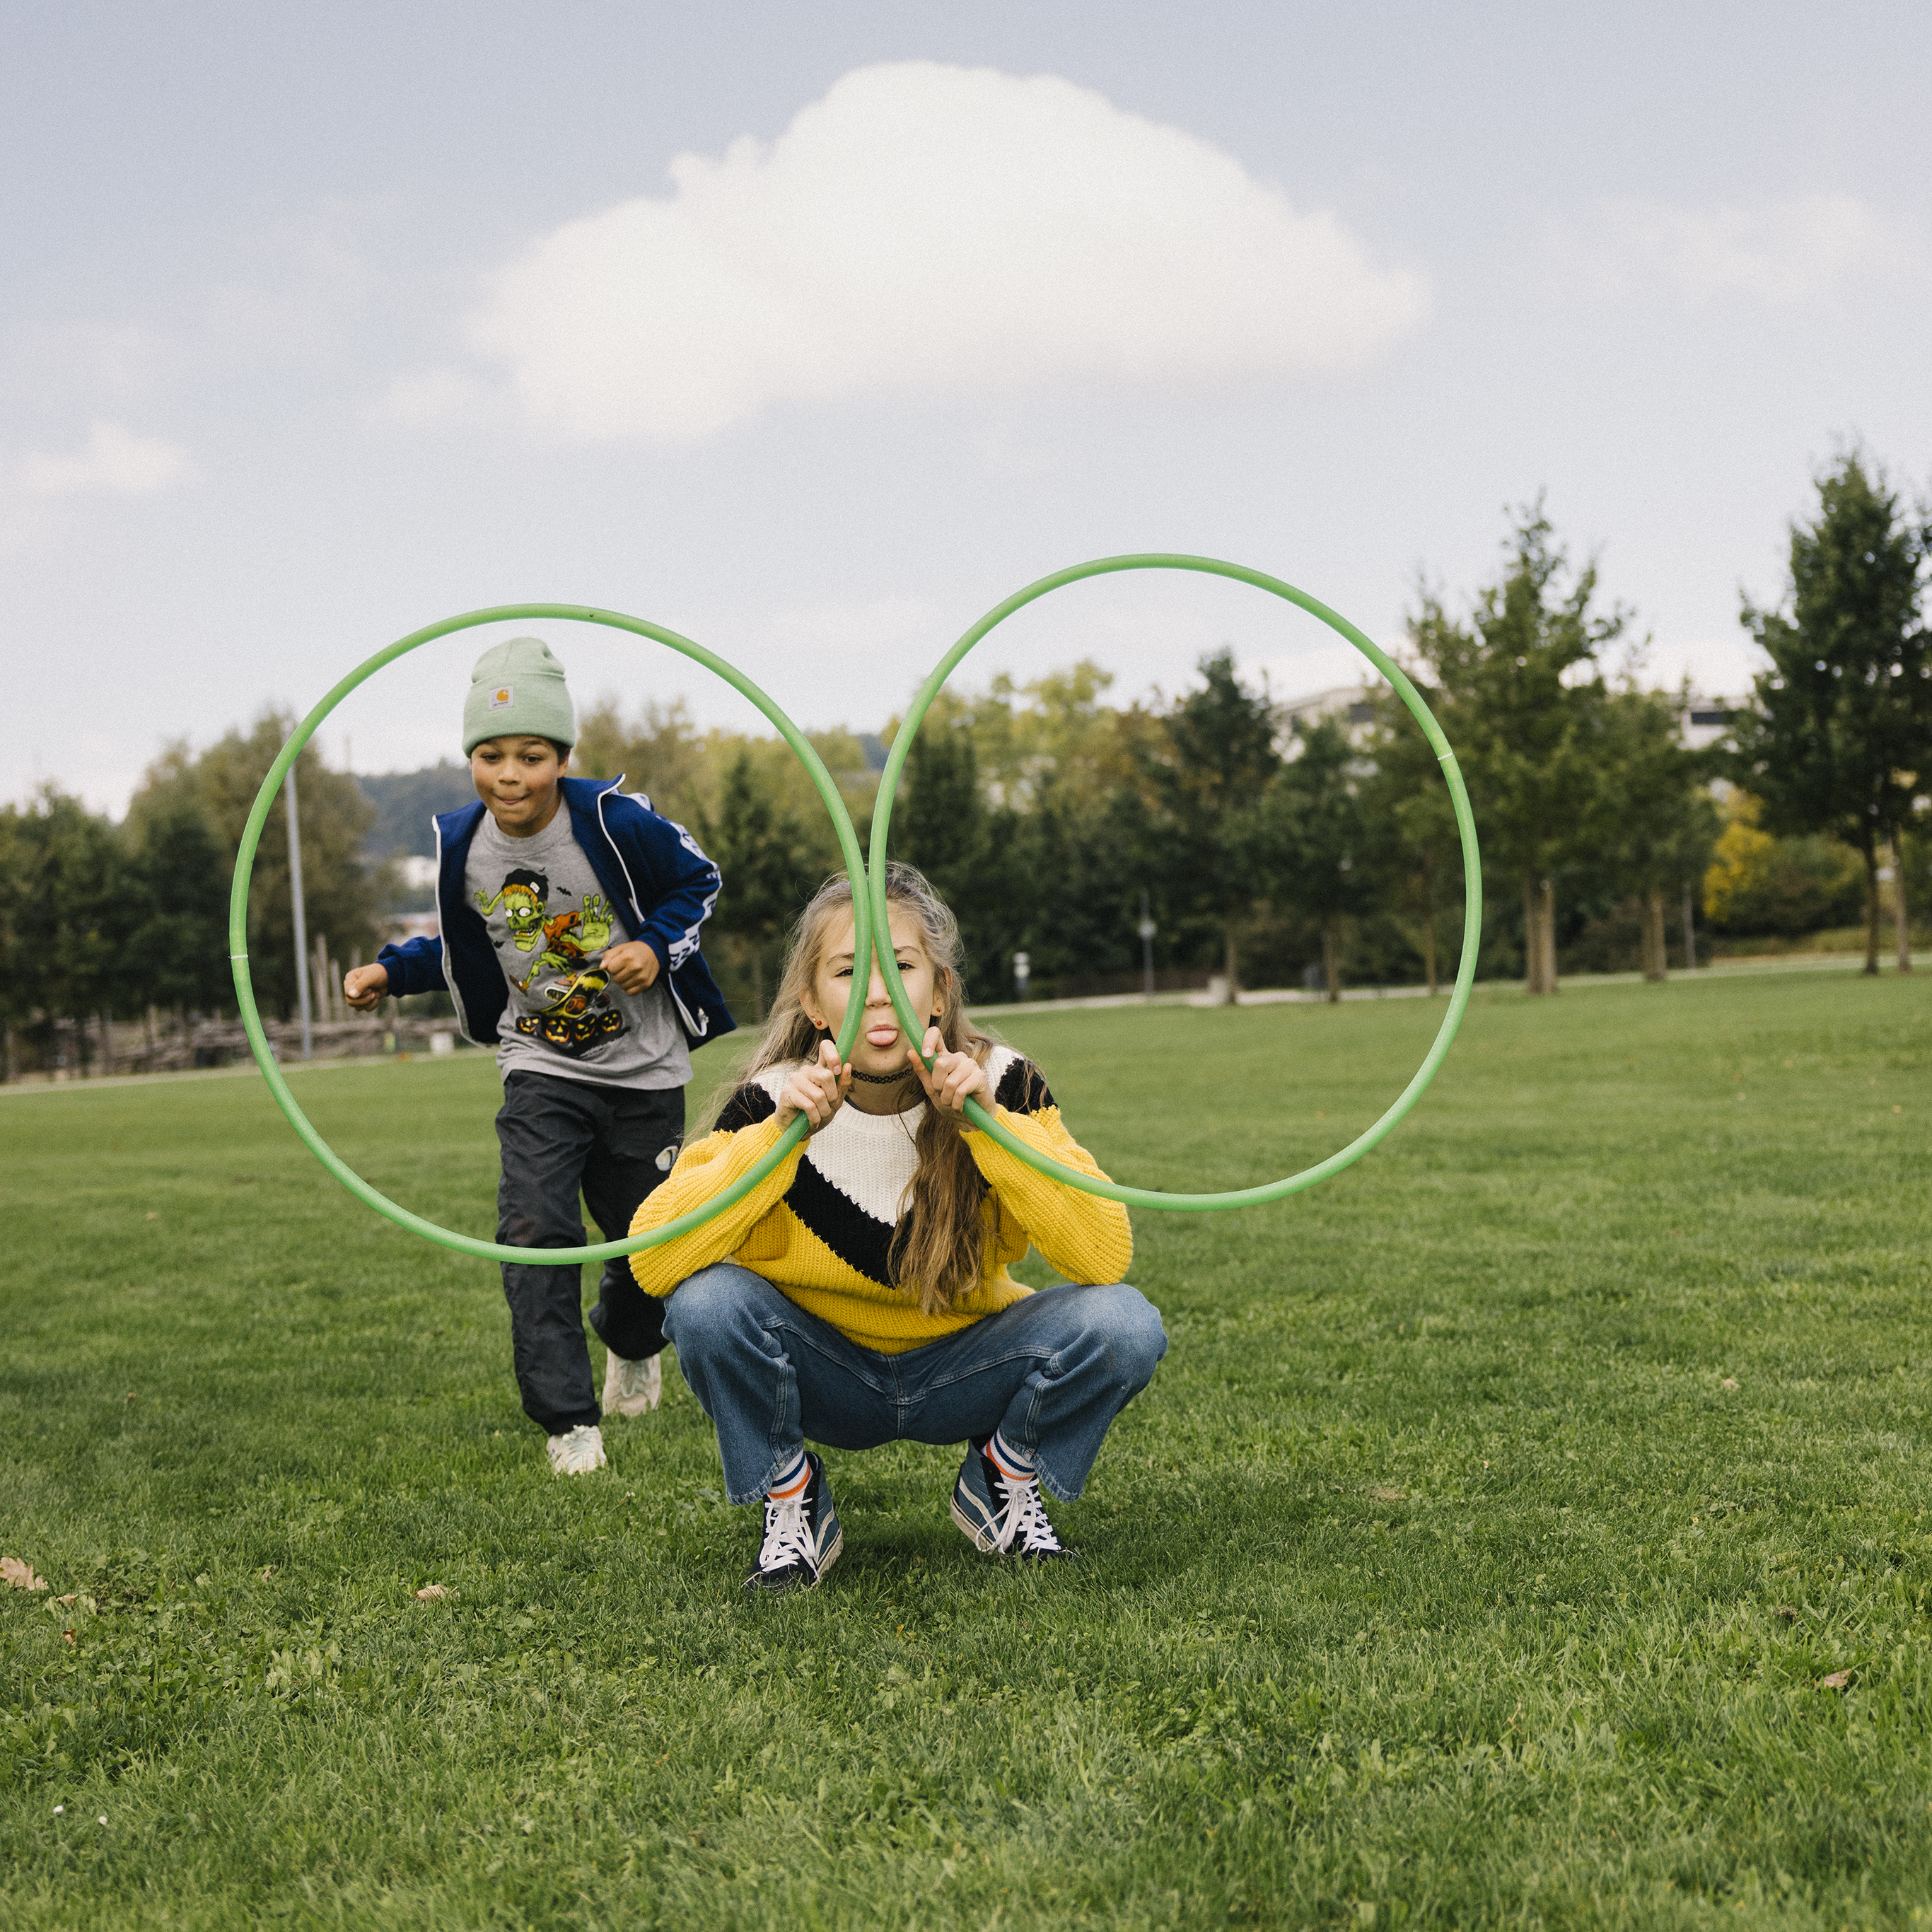 Una ragazza tiene due hula hoop davanti al viso a mo’ di occhiali e tira fuori la lingua, mentre un ragazzo arriva correndo per saltare attraverso uno degli anelli.